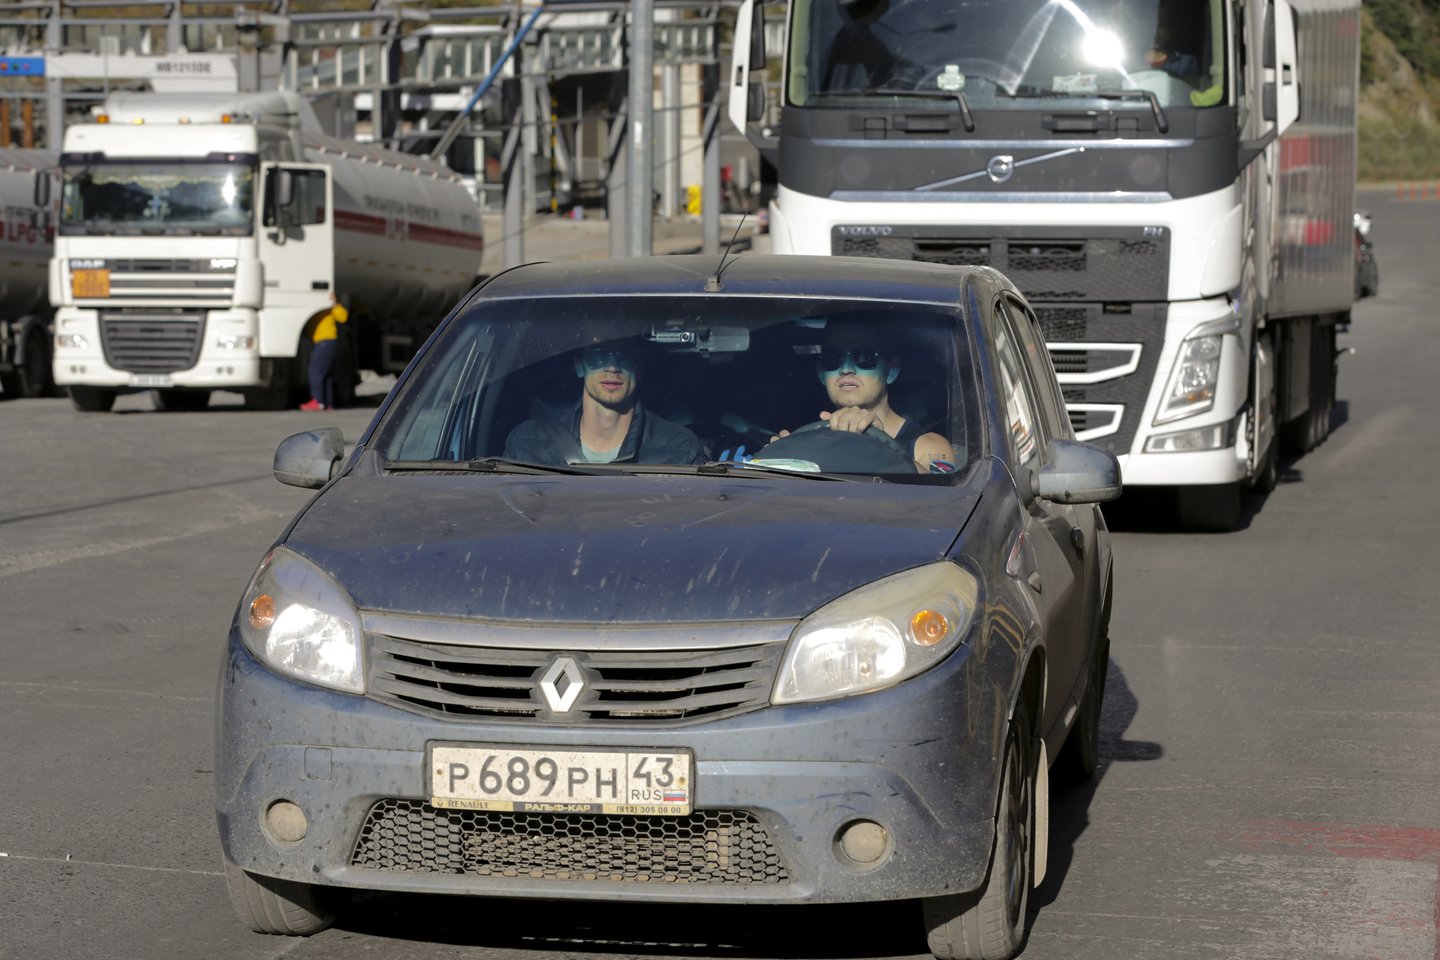 Suomija uždraudė įvažiuoti į šalį automobiliams su rusiškais numeriais.<br>AP/Scanpix asociatyvi nuotr.